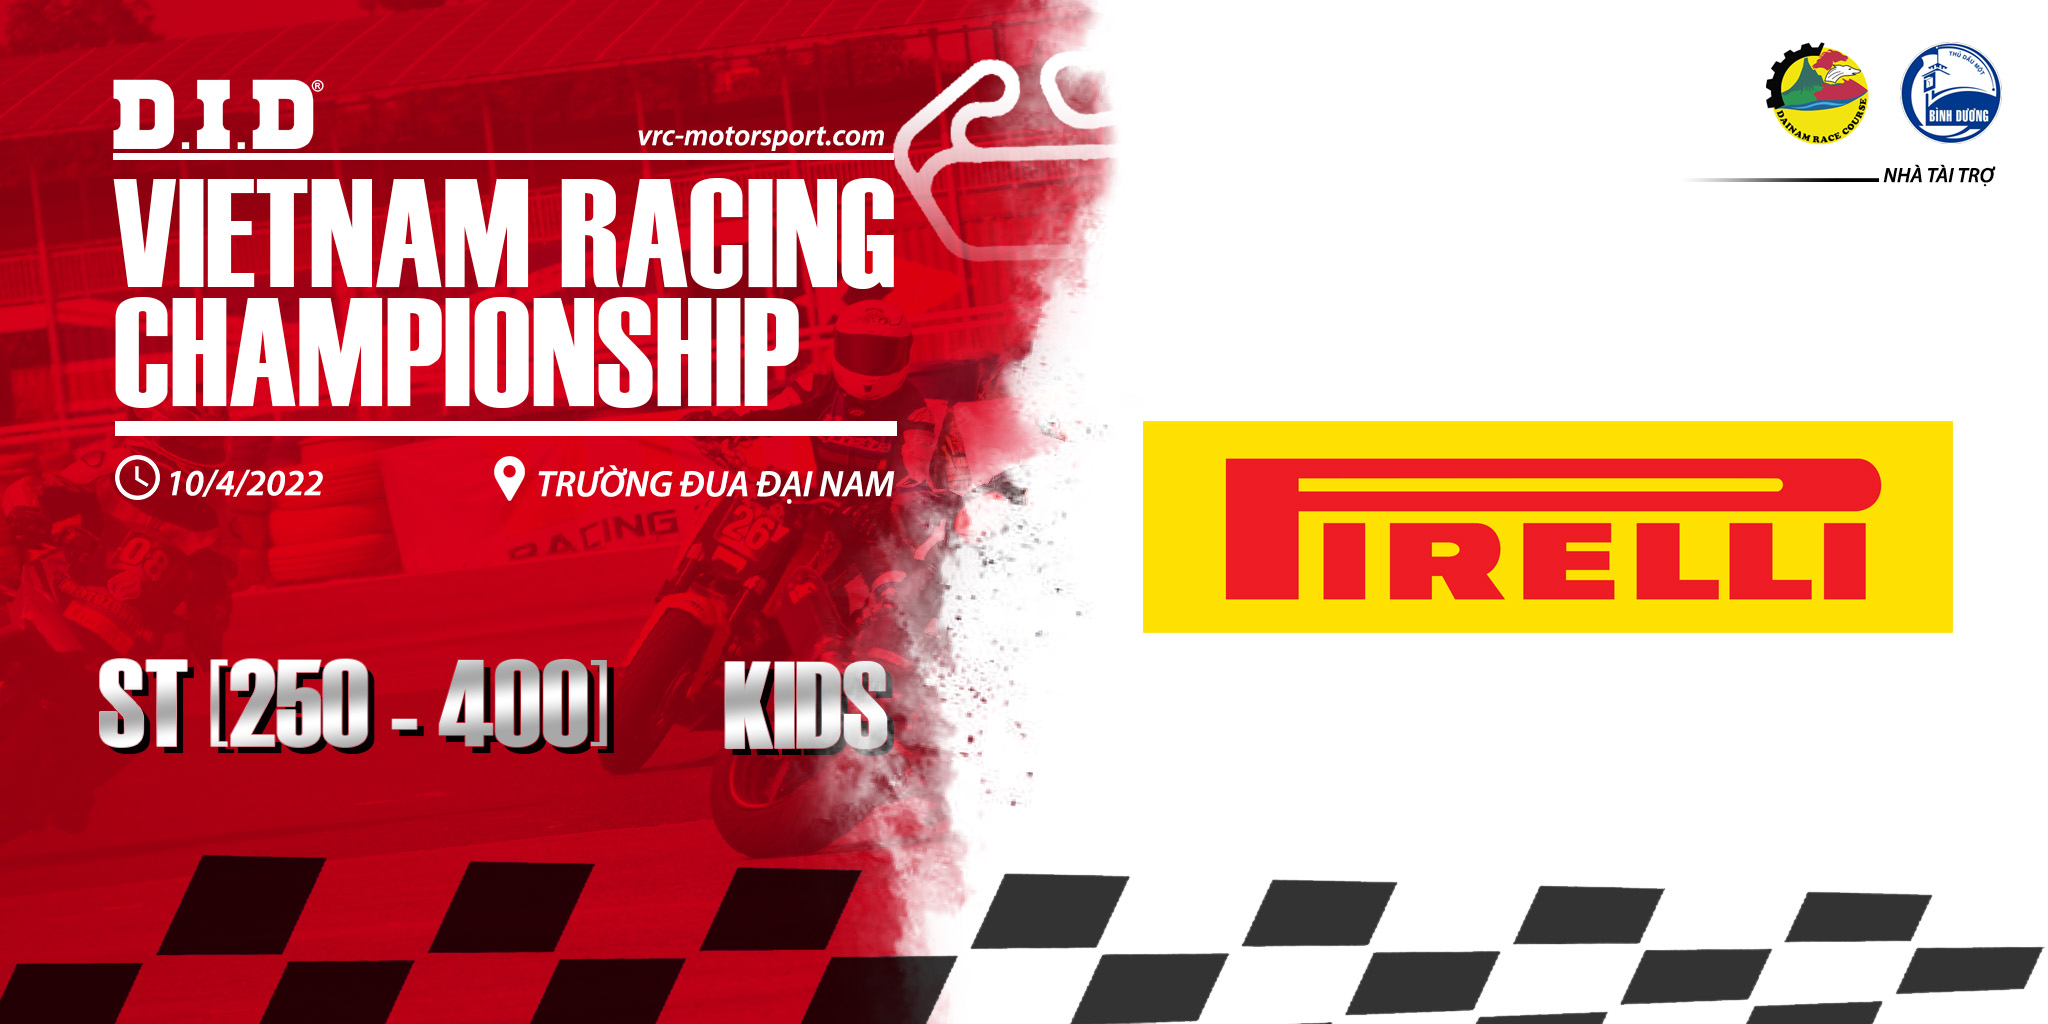 DID VRC 2022 - Nhà tài trợ PIRELLI tặng miễn phí lốp cho các tay đua tham gia giải